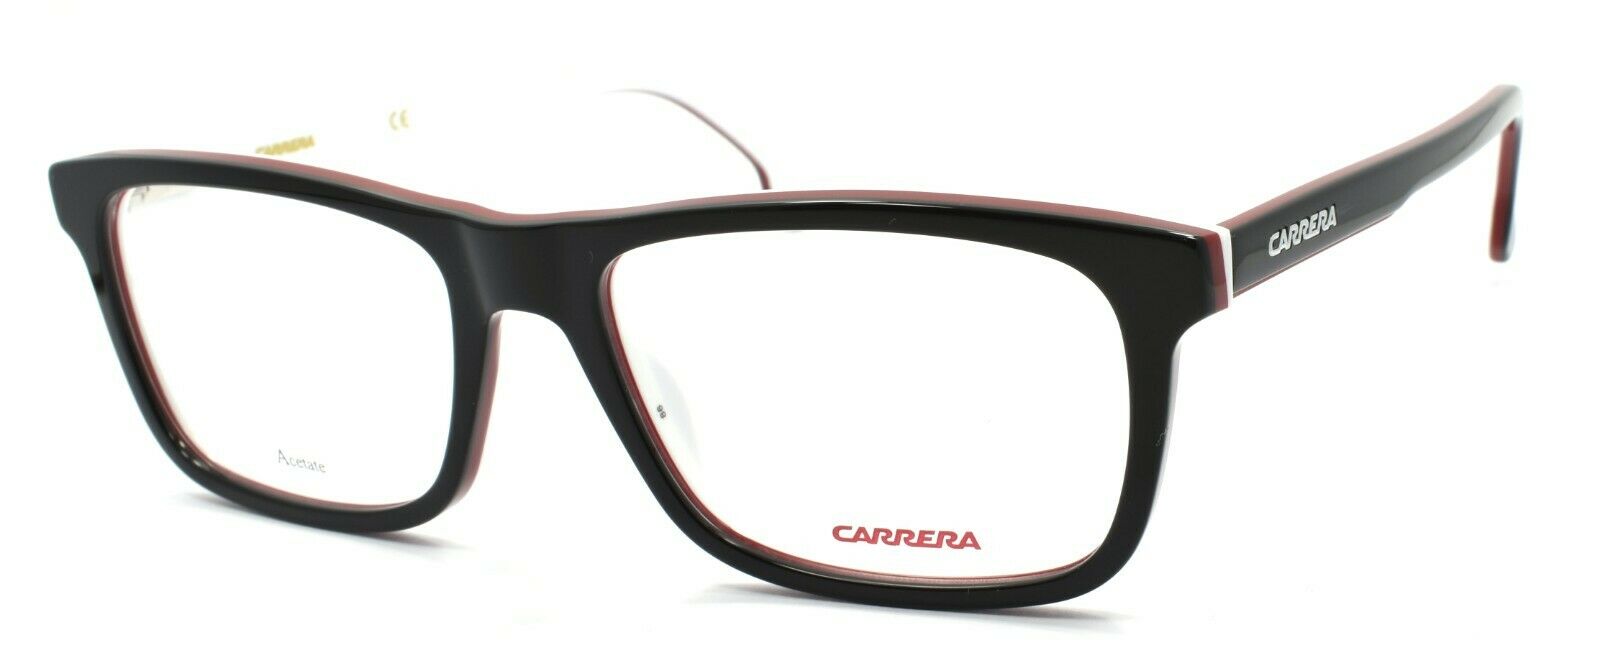 1-Carrera 1106/V 807 Men's Eyeglasses Frames 53-17-145 Black + CASE-762753112194-IKSpecs